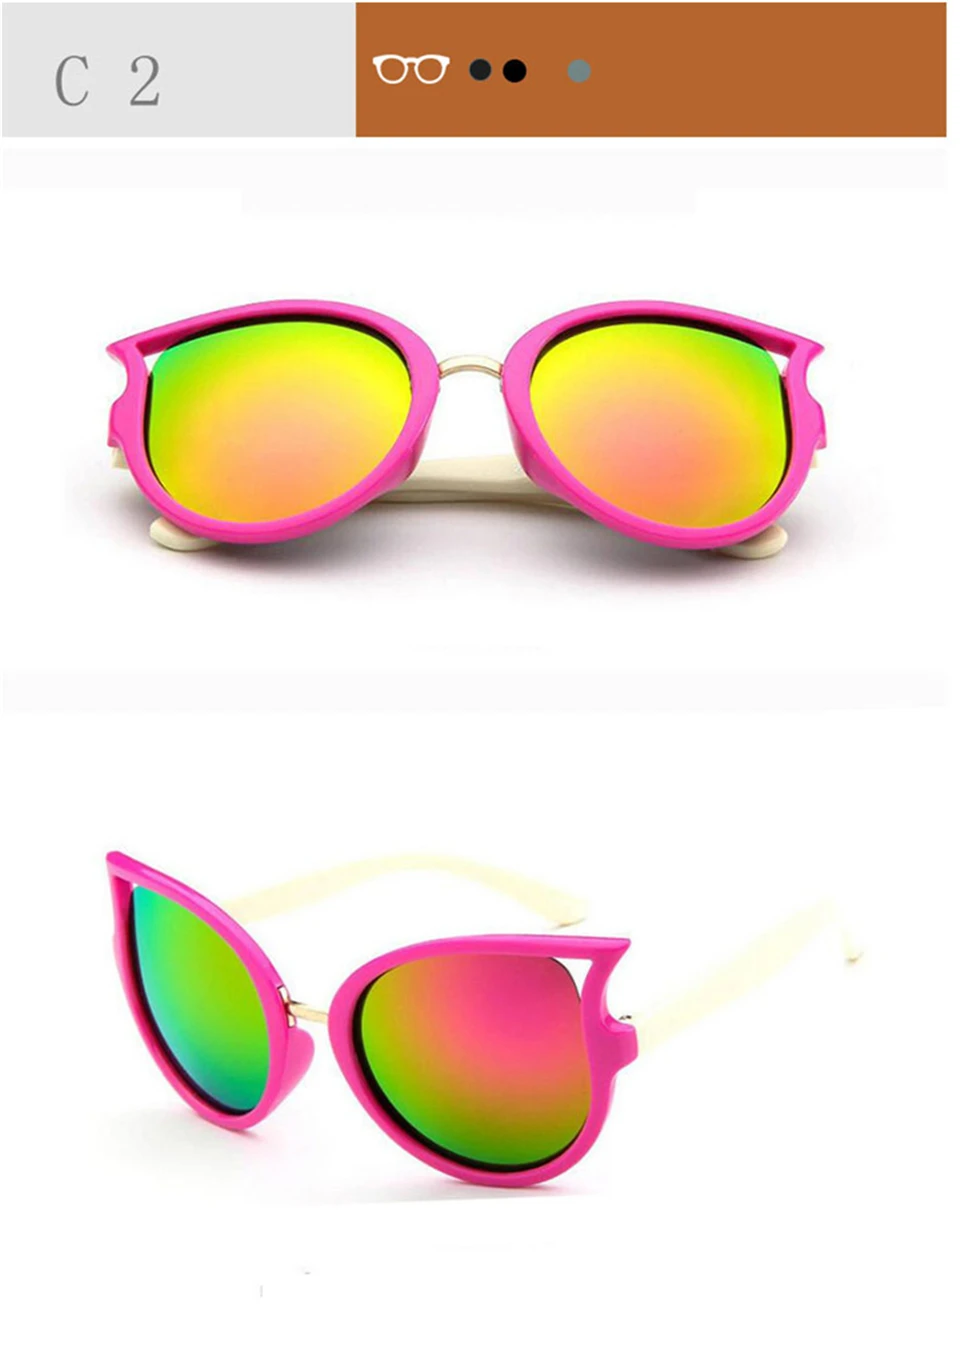 RHAMAI детские солнцезащитные очки для девочек брендовые Детские очки с кошачьими глазами для мальчиков UV400 линзы детские солнцезащитные очки милые очки оттенки очки